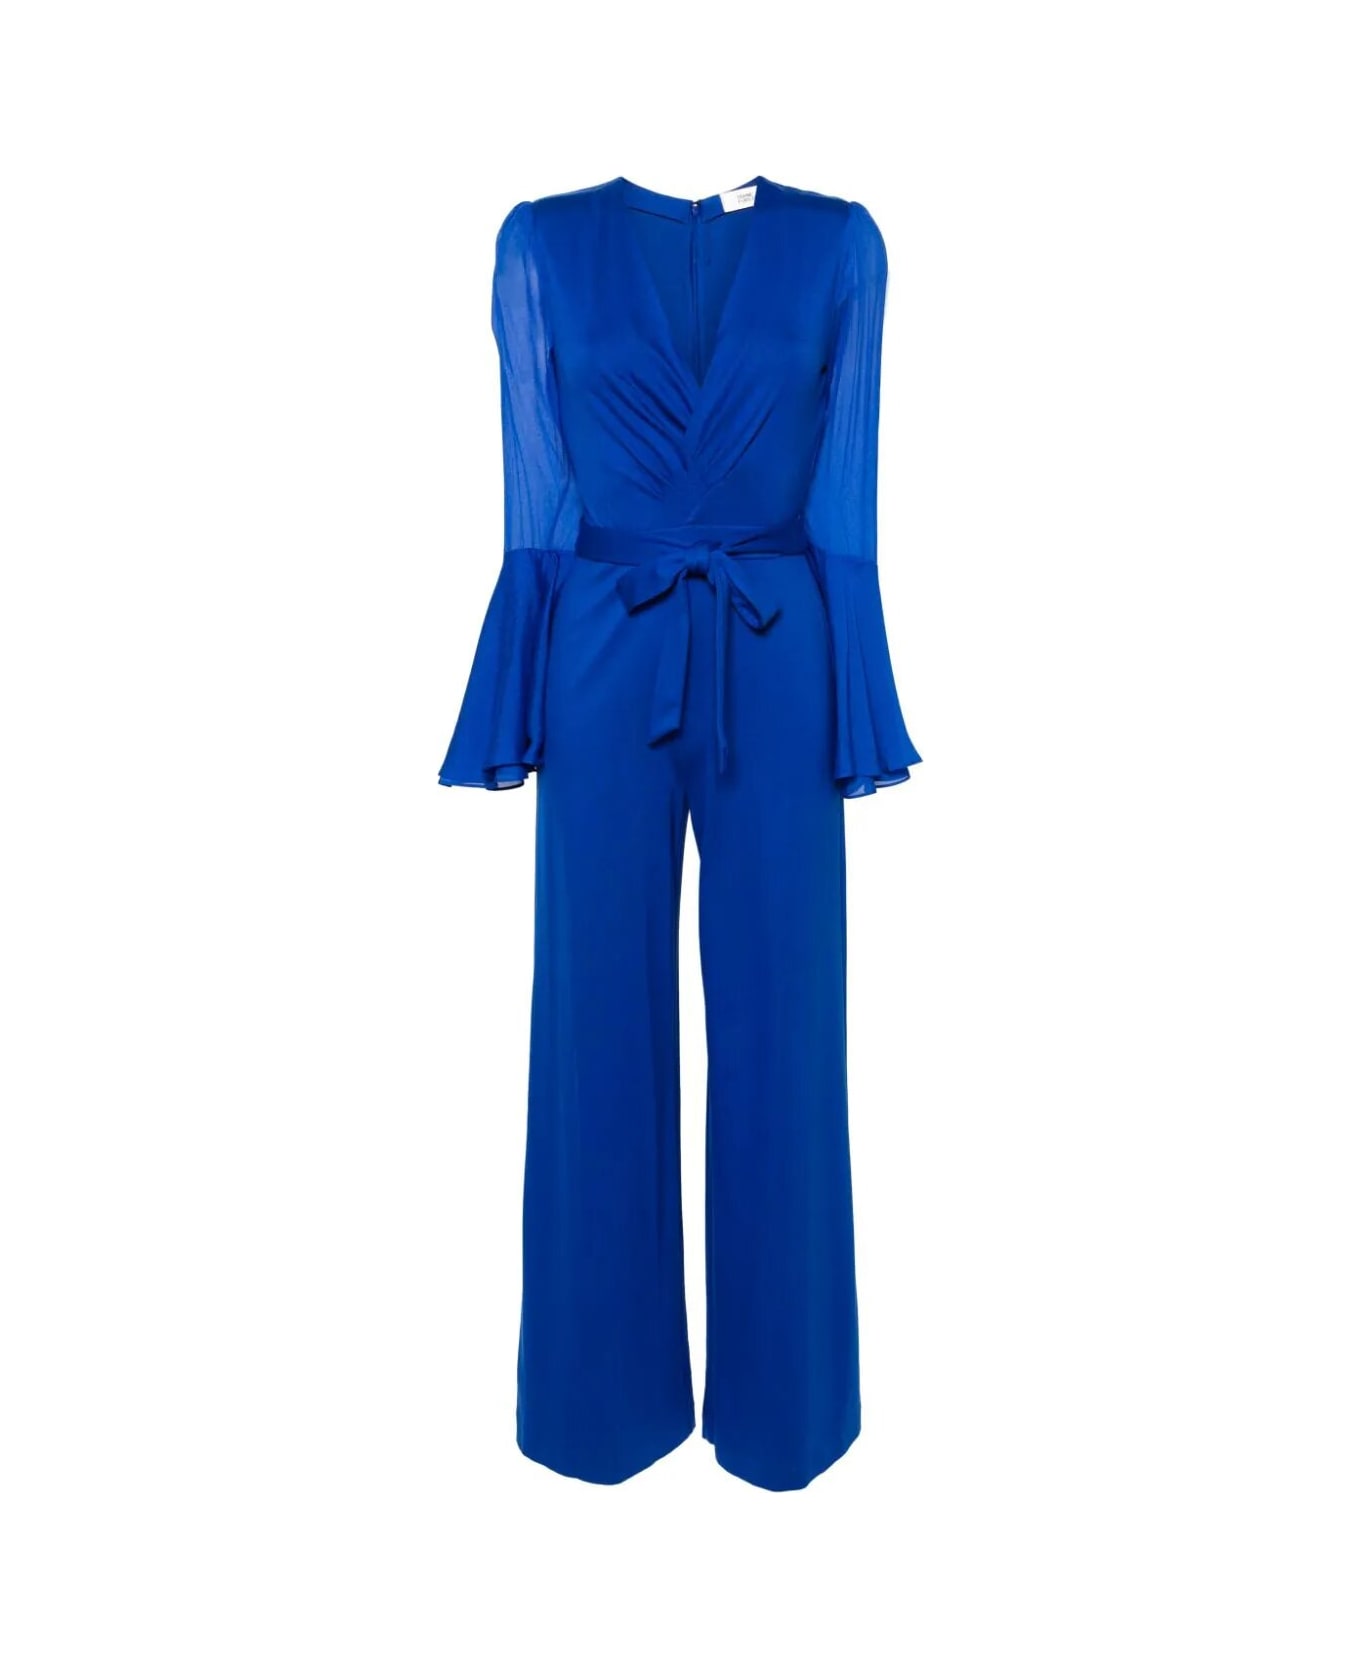 Diane Von Furstenberg Shing Jumpsuit - Sapphire Blue ジャンプスーツ